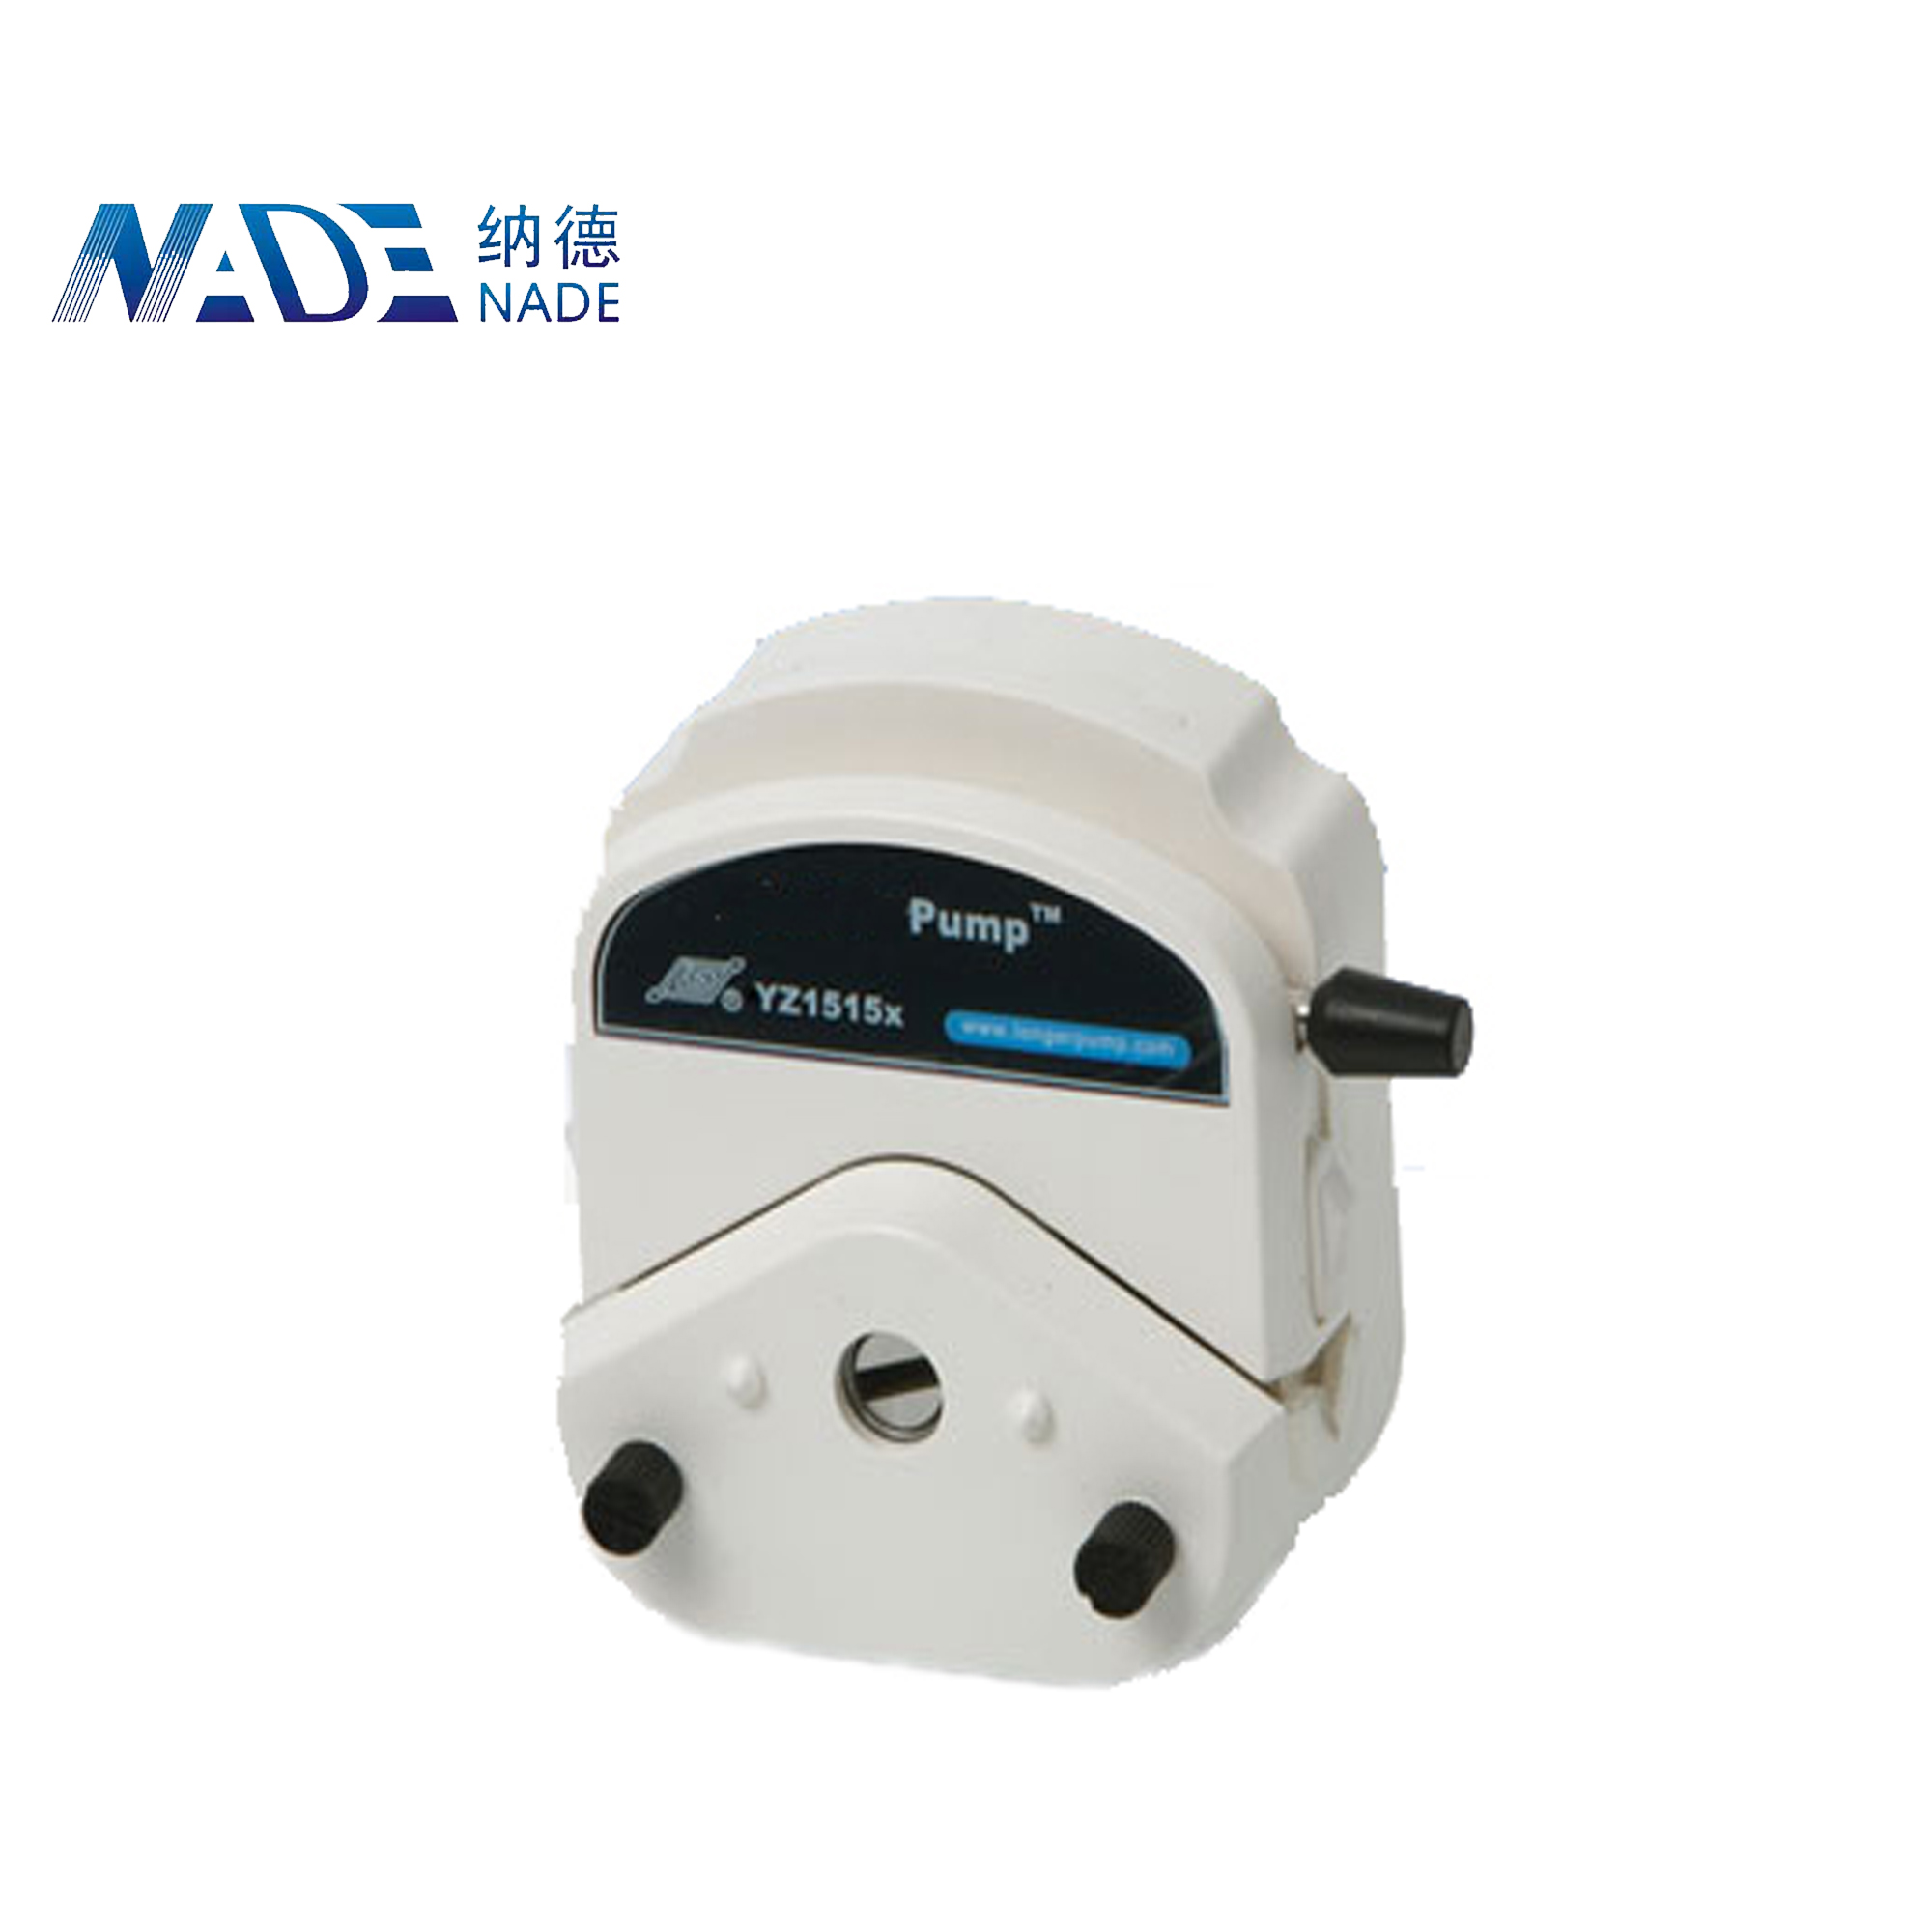 Nade Peristaltic pump Head YZ2515X 1600ml/min